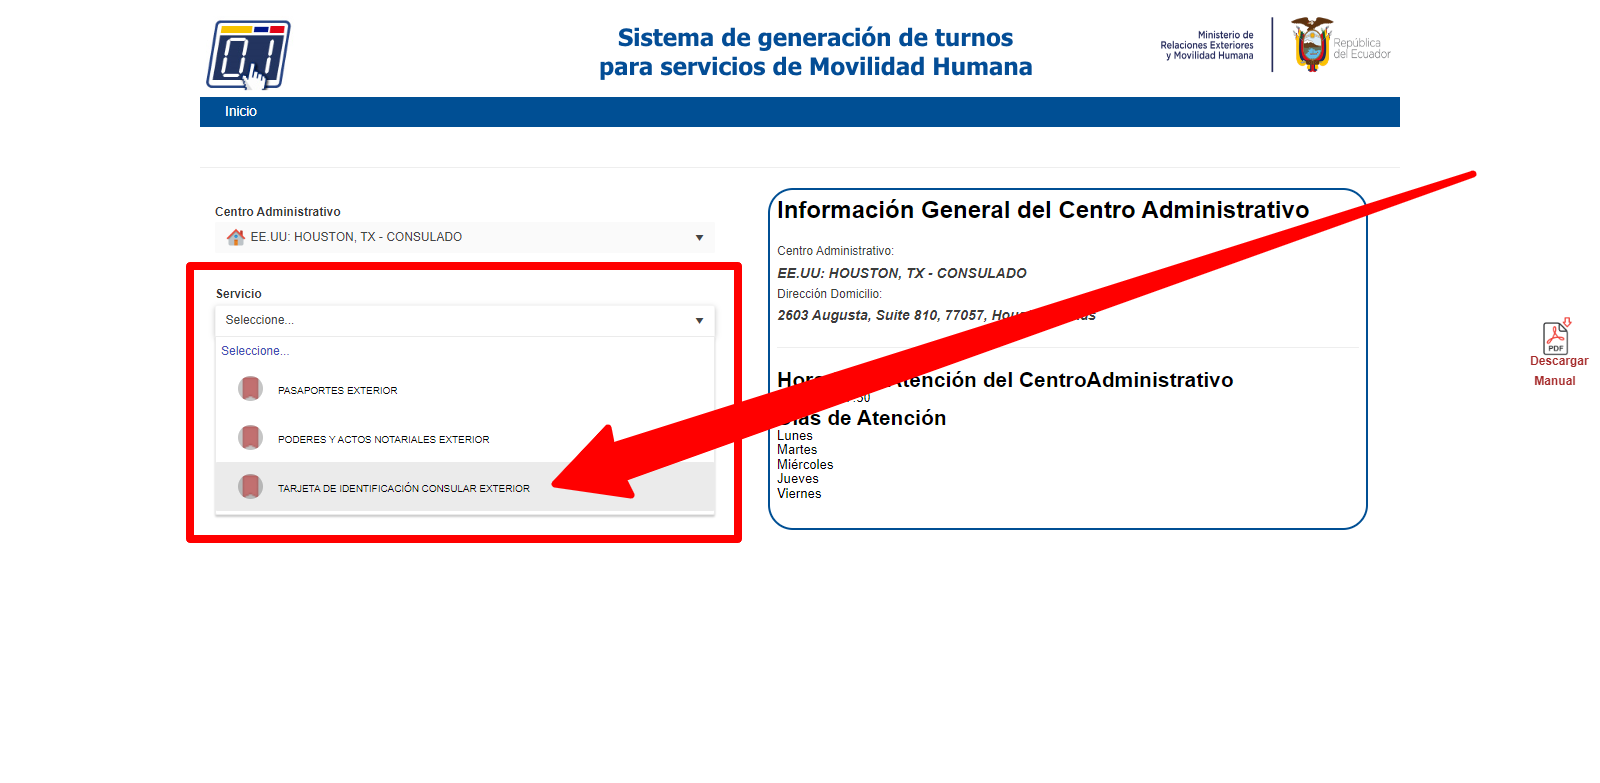 Tarjeta de Identificación Consular para Ecuatorianos en EE.UU